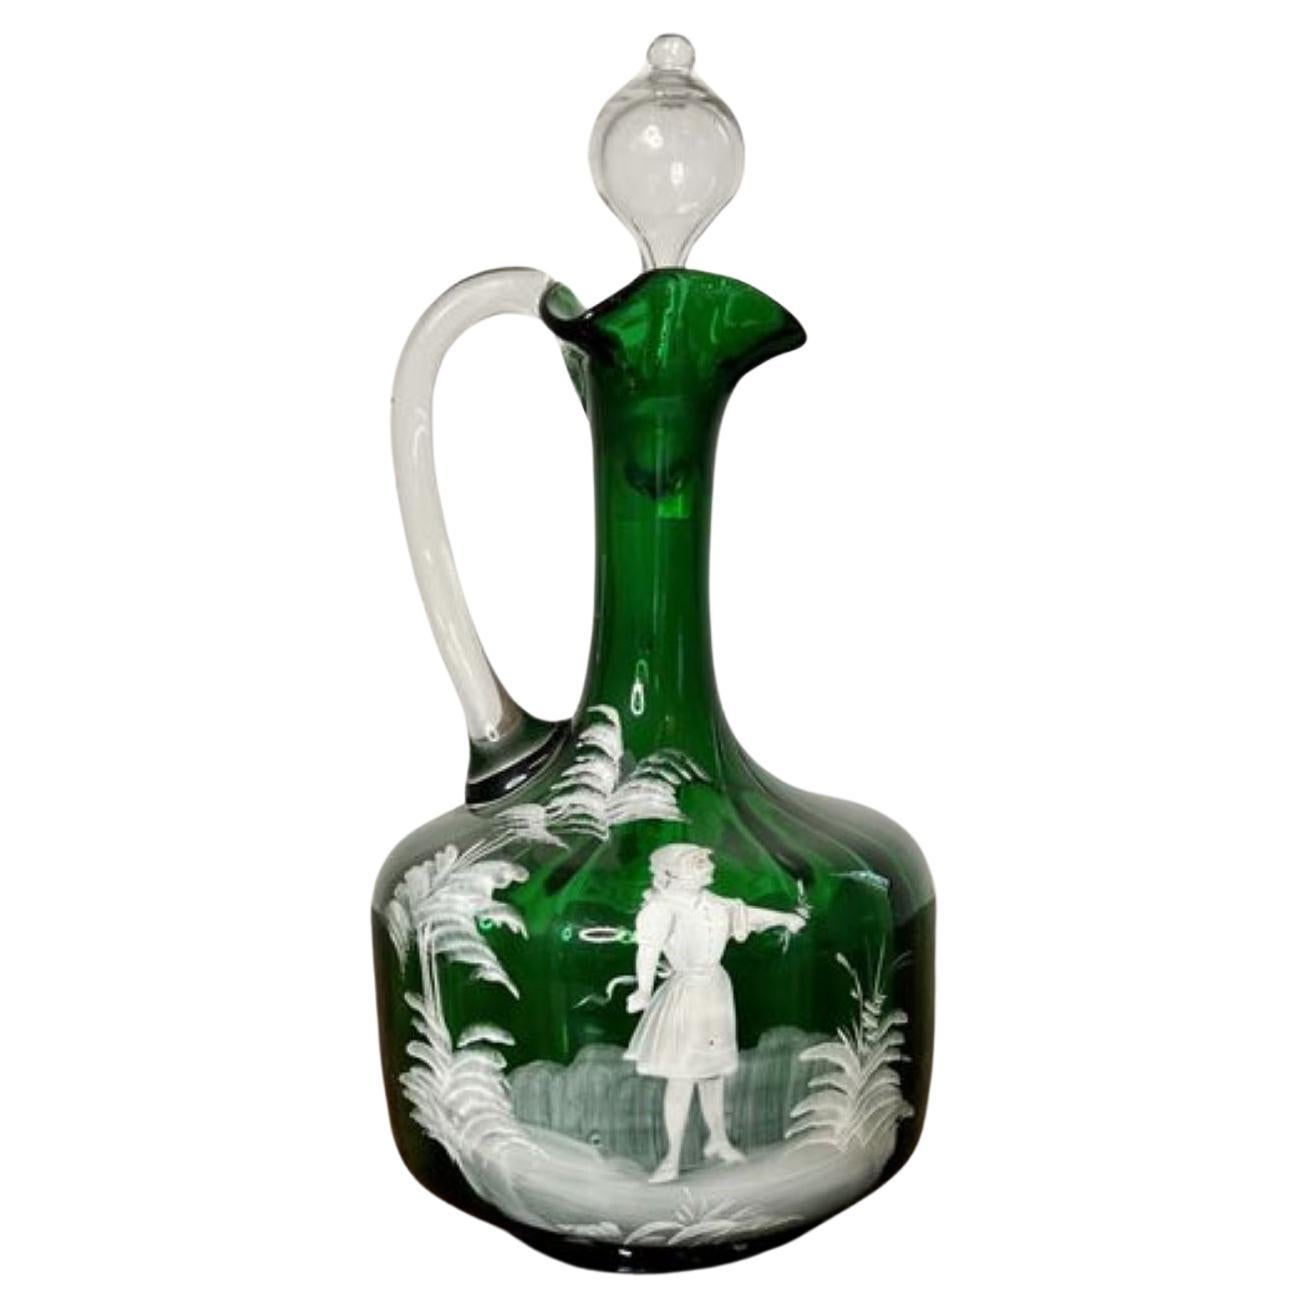 Impresionante aguamanil victoriano antiguo de cristal verde de Mary Gregory 